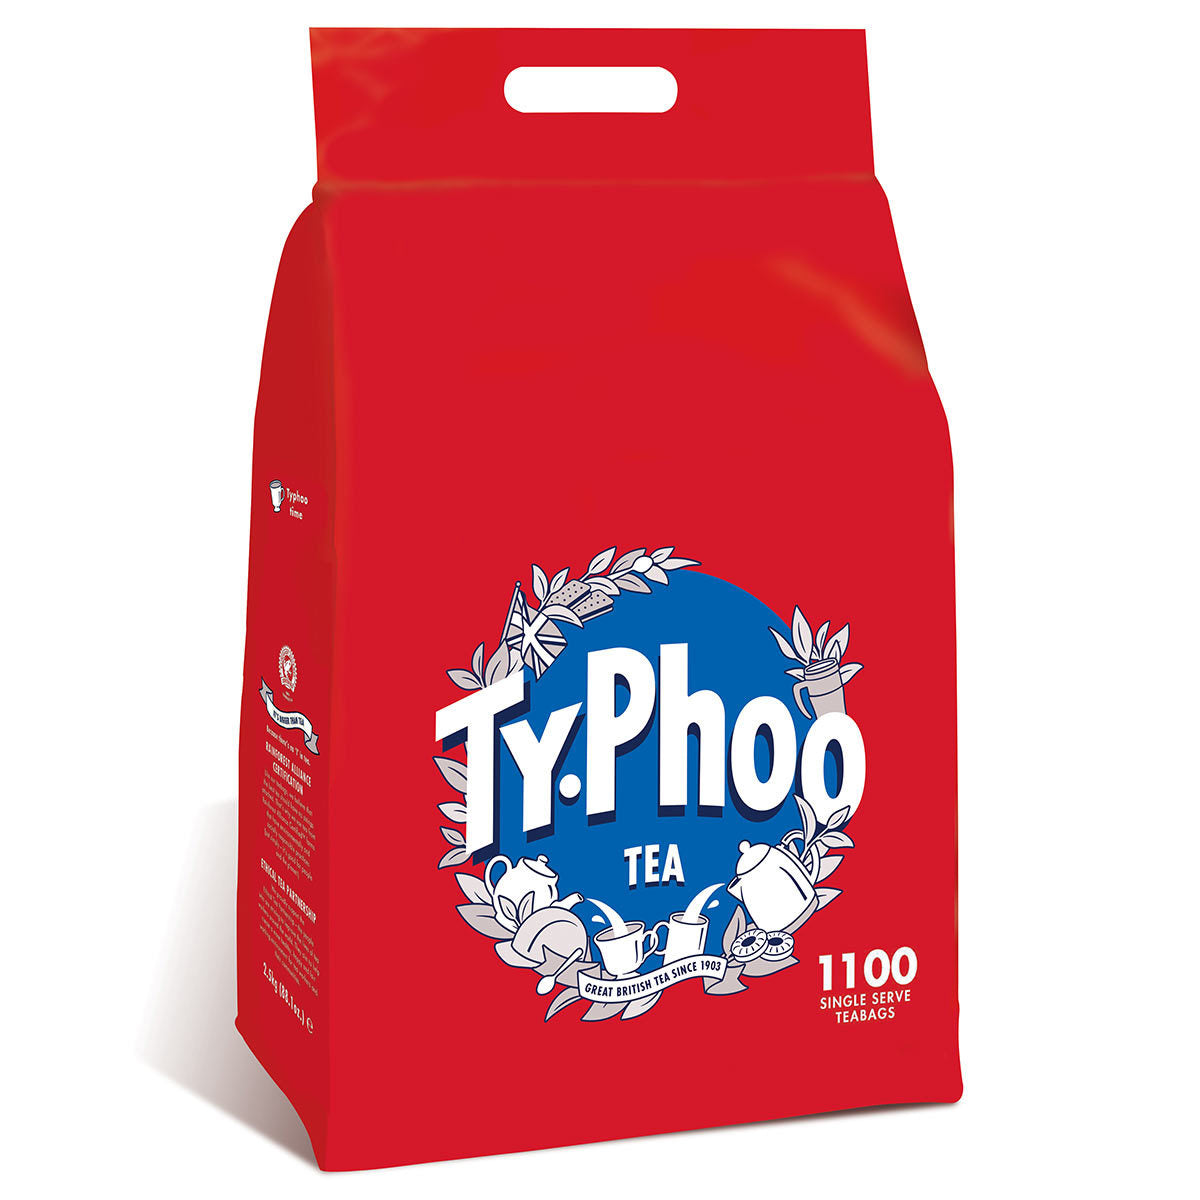 Typhoo Tea Bags, 1100 Pack - McGrocer